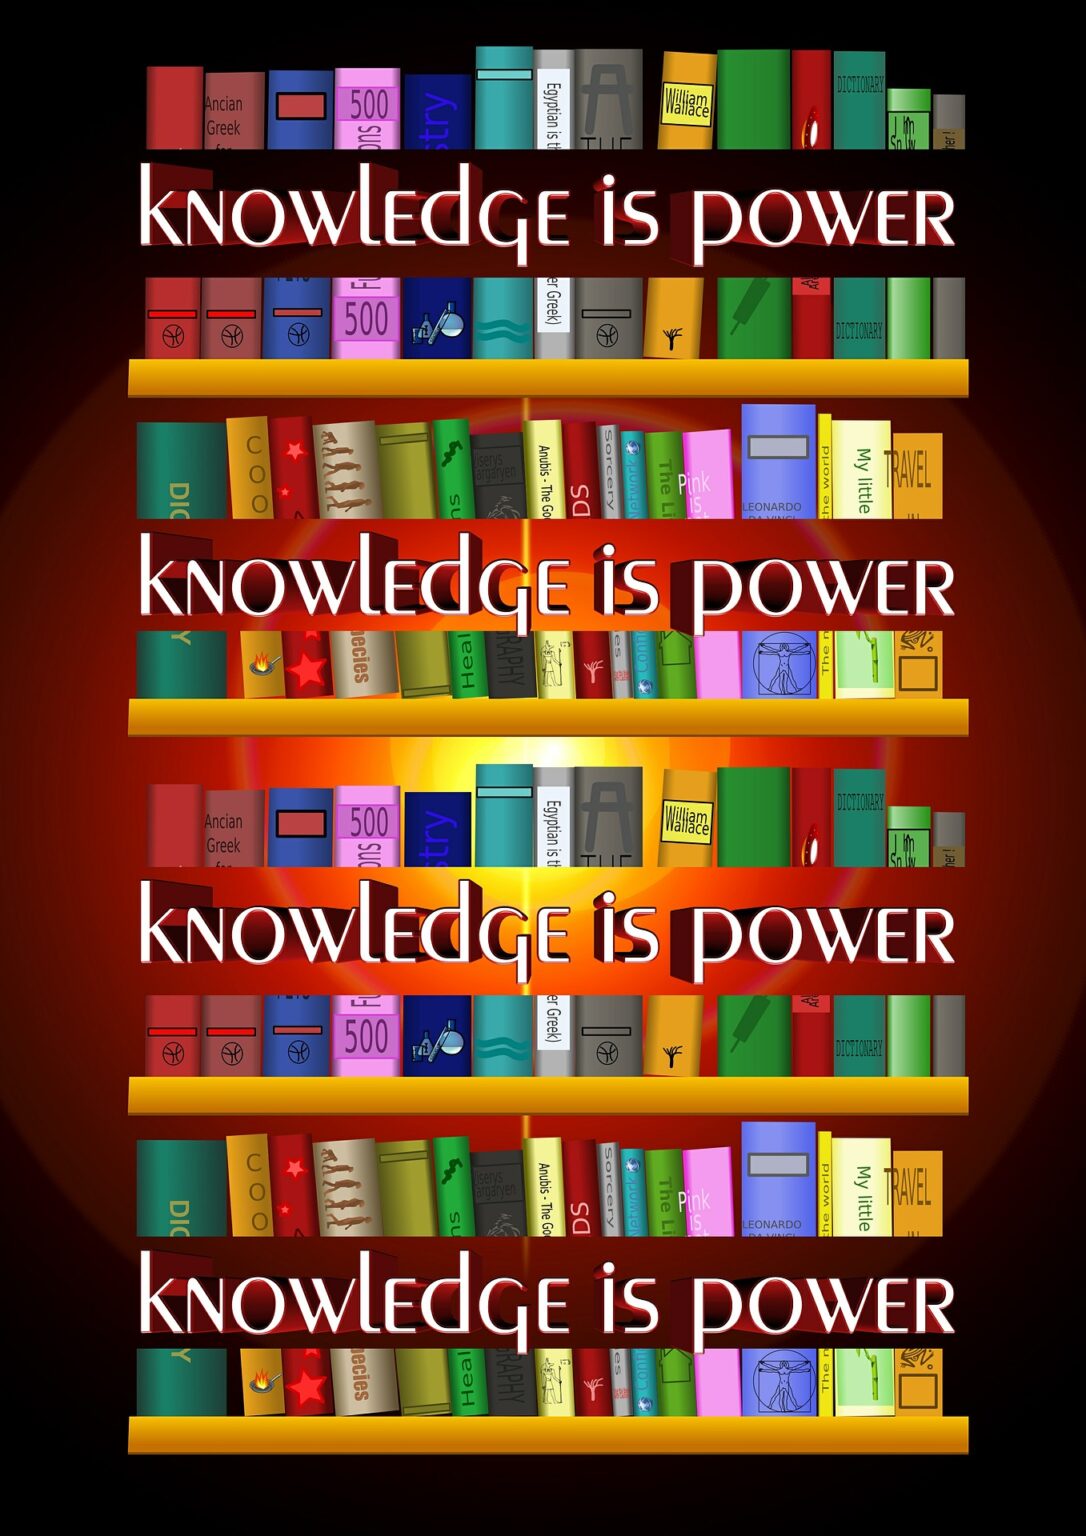 沢山の本が並び、知識は力となるというメッセージ